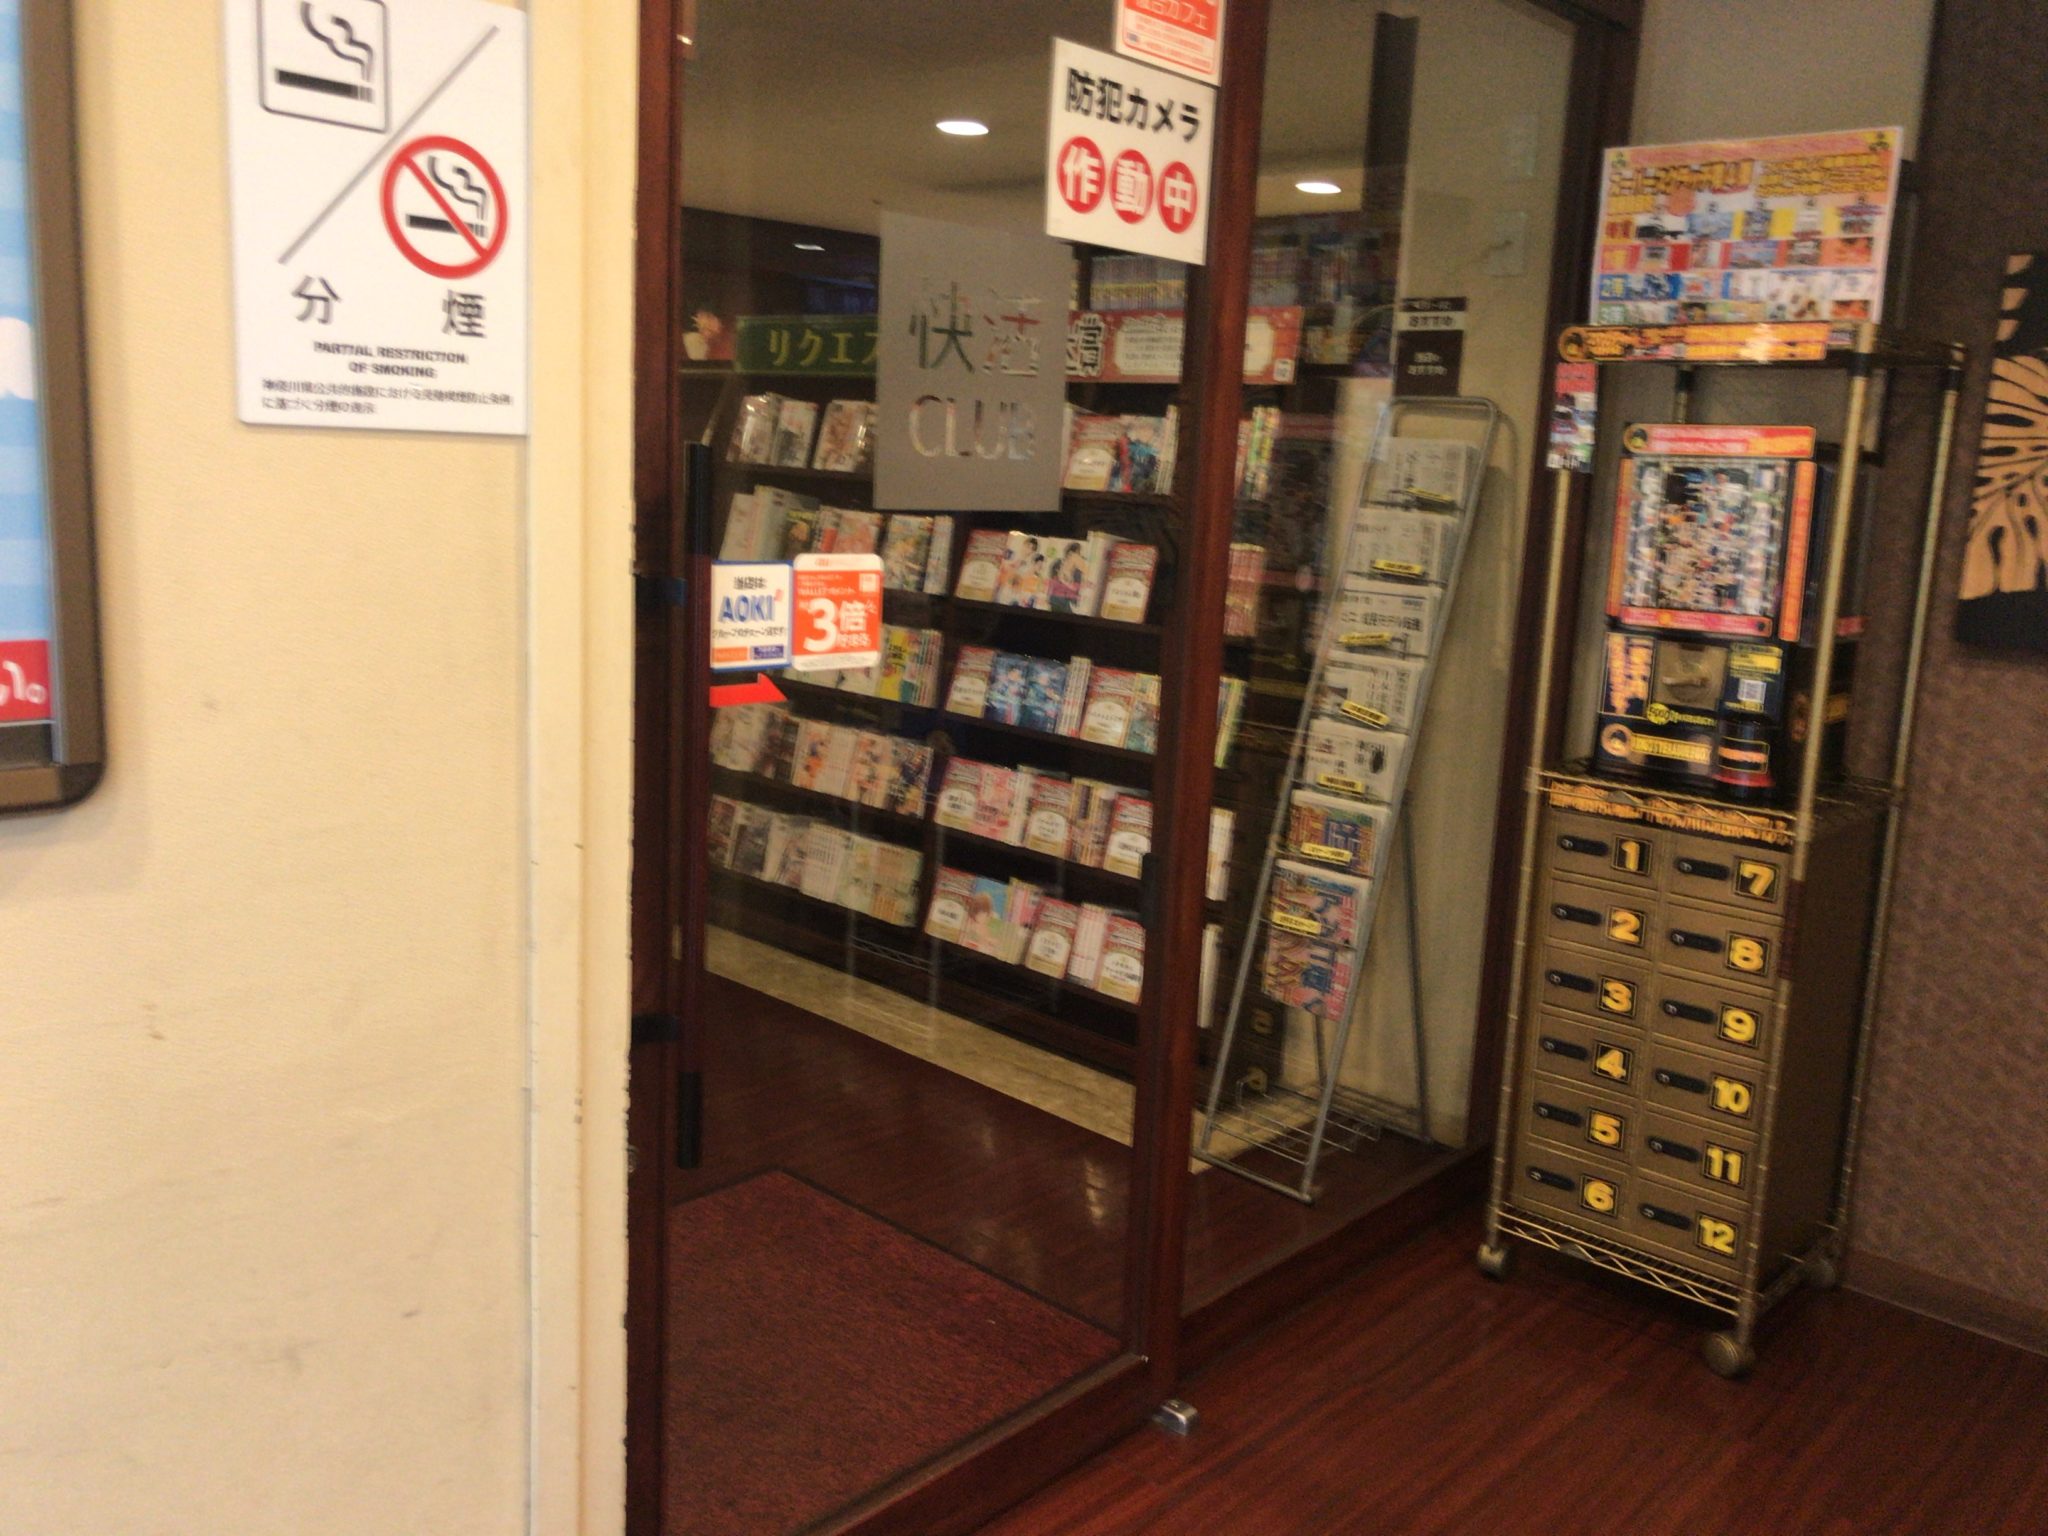 磯子駅から徒歩2分 快活club 磯子駅前店をレポート 日本全国のネカフェ 漫画喫茶マップのヒマップ